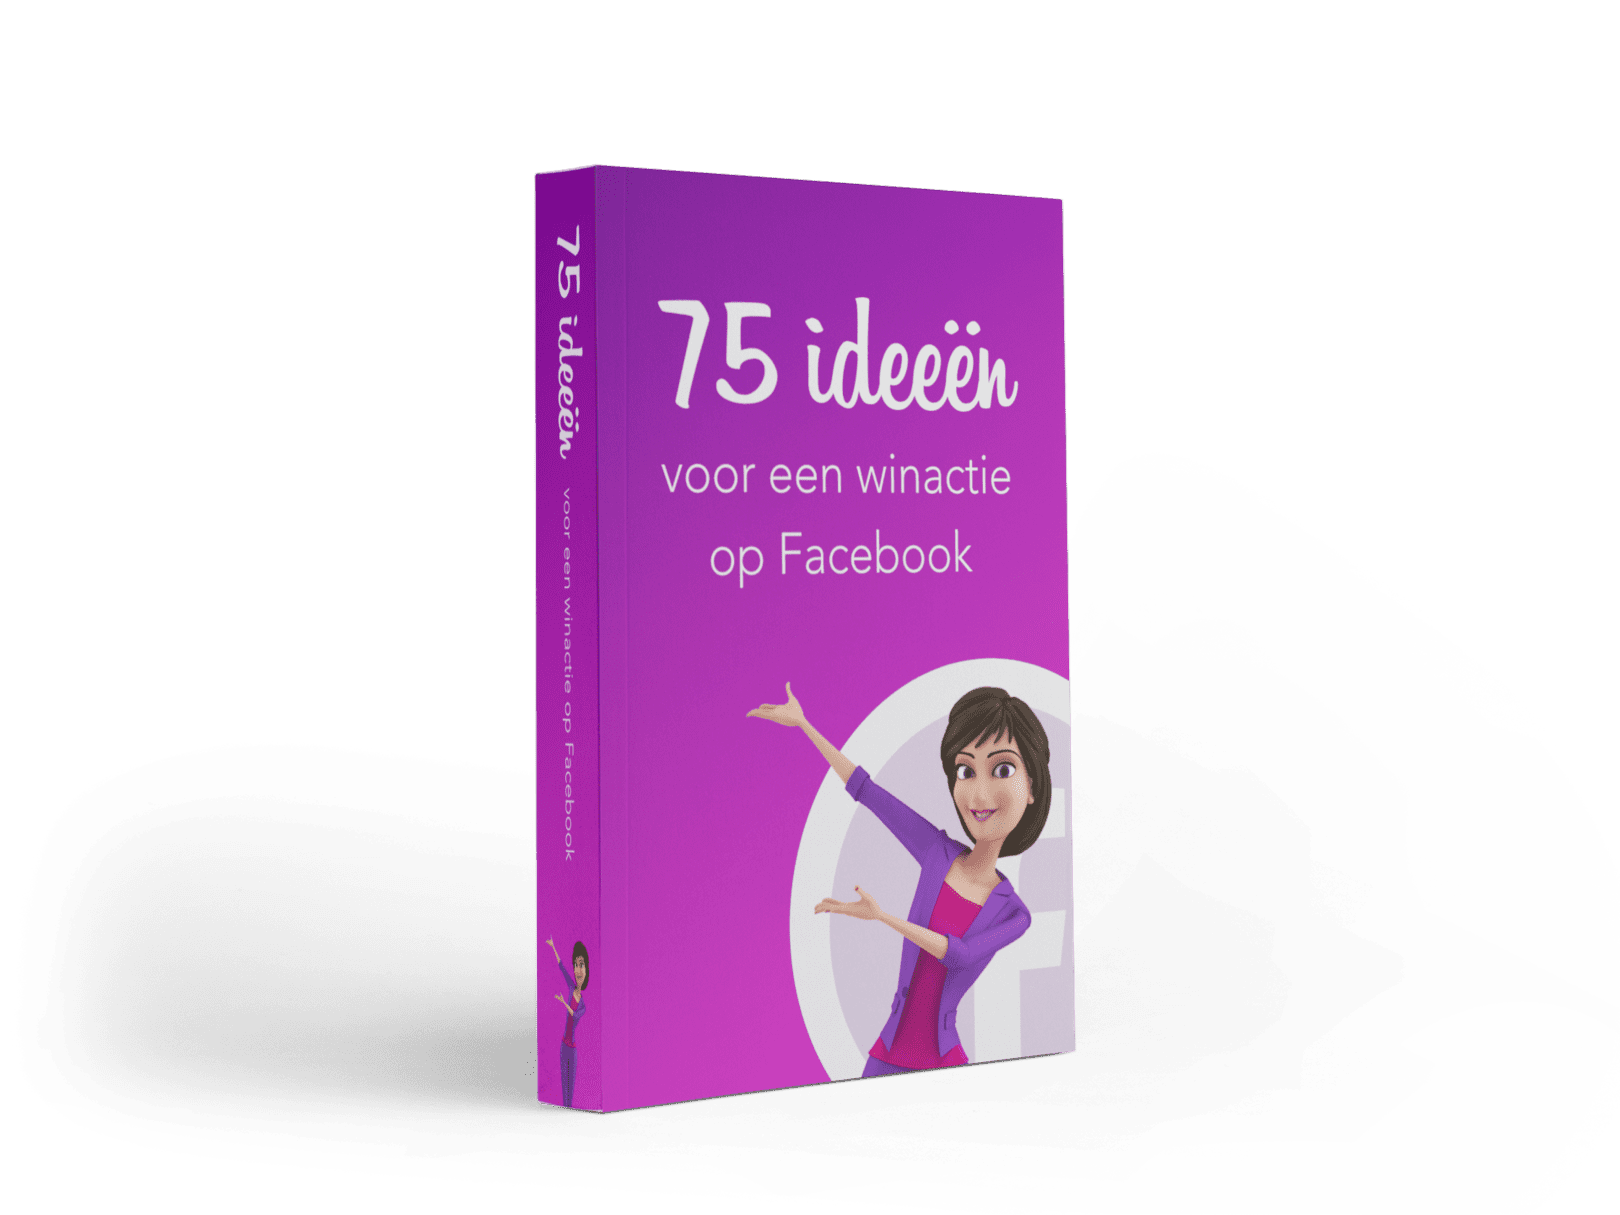 74 Facebook ideeën voor een winactie op Facebook